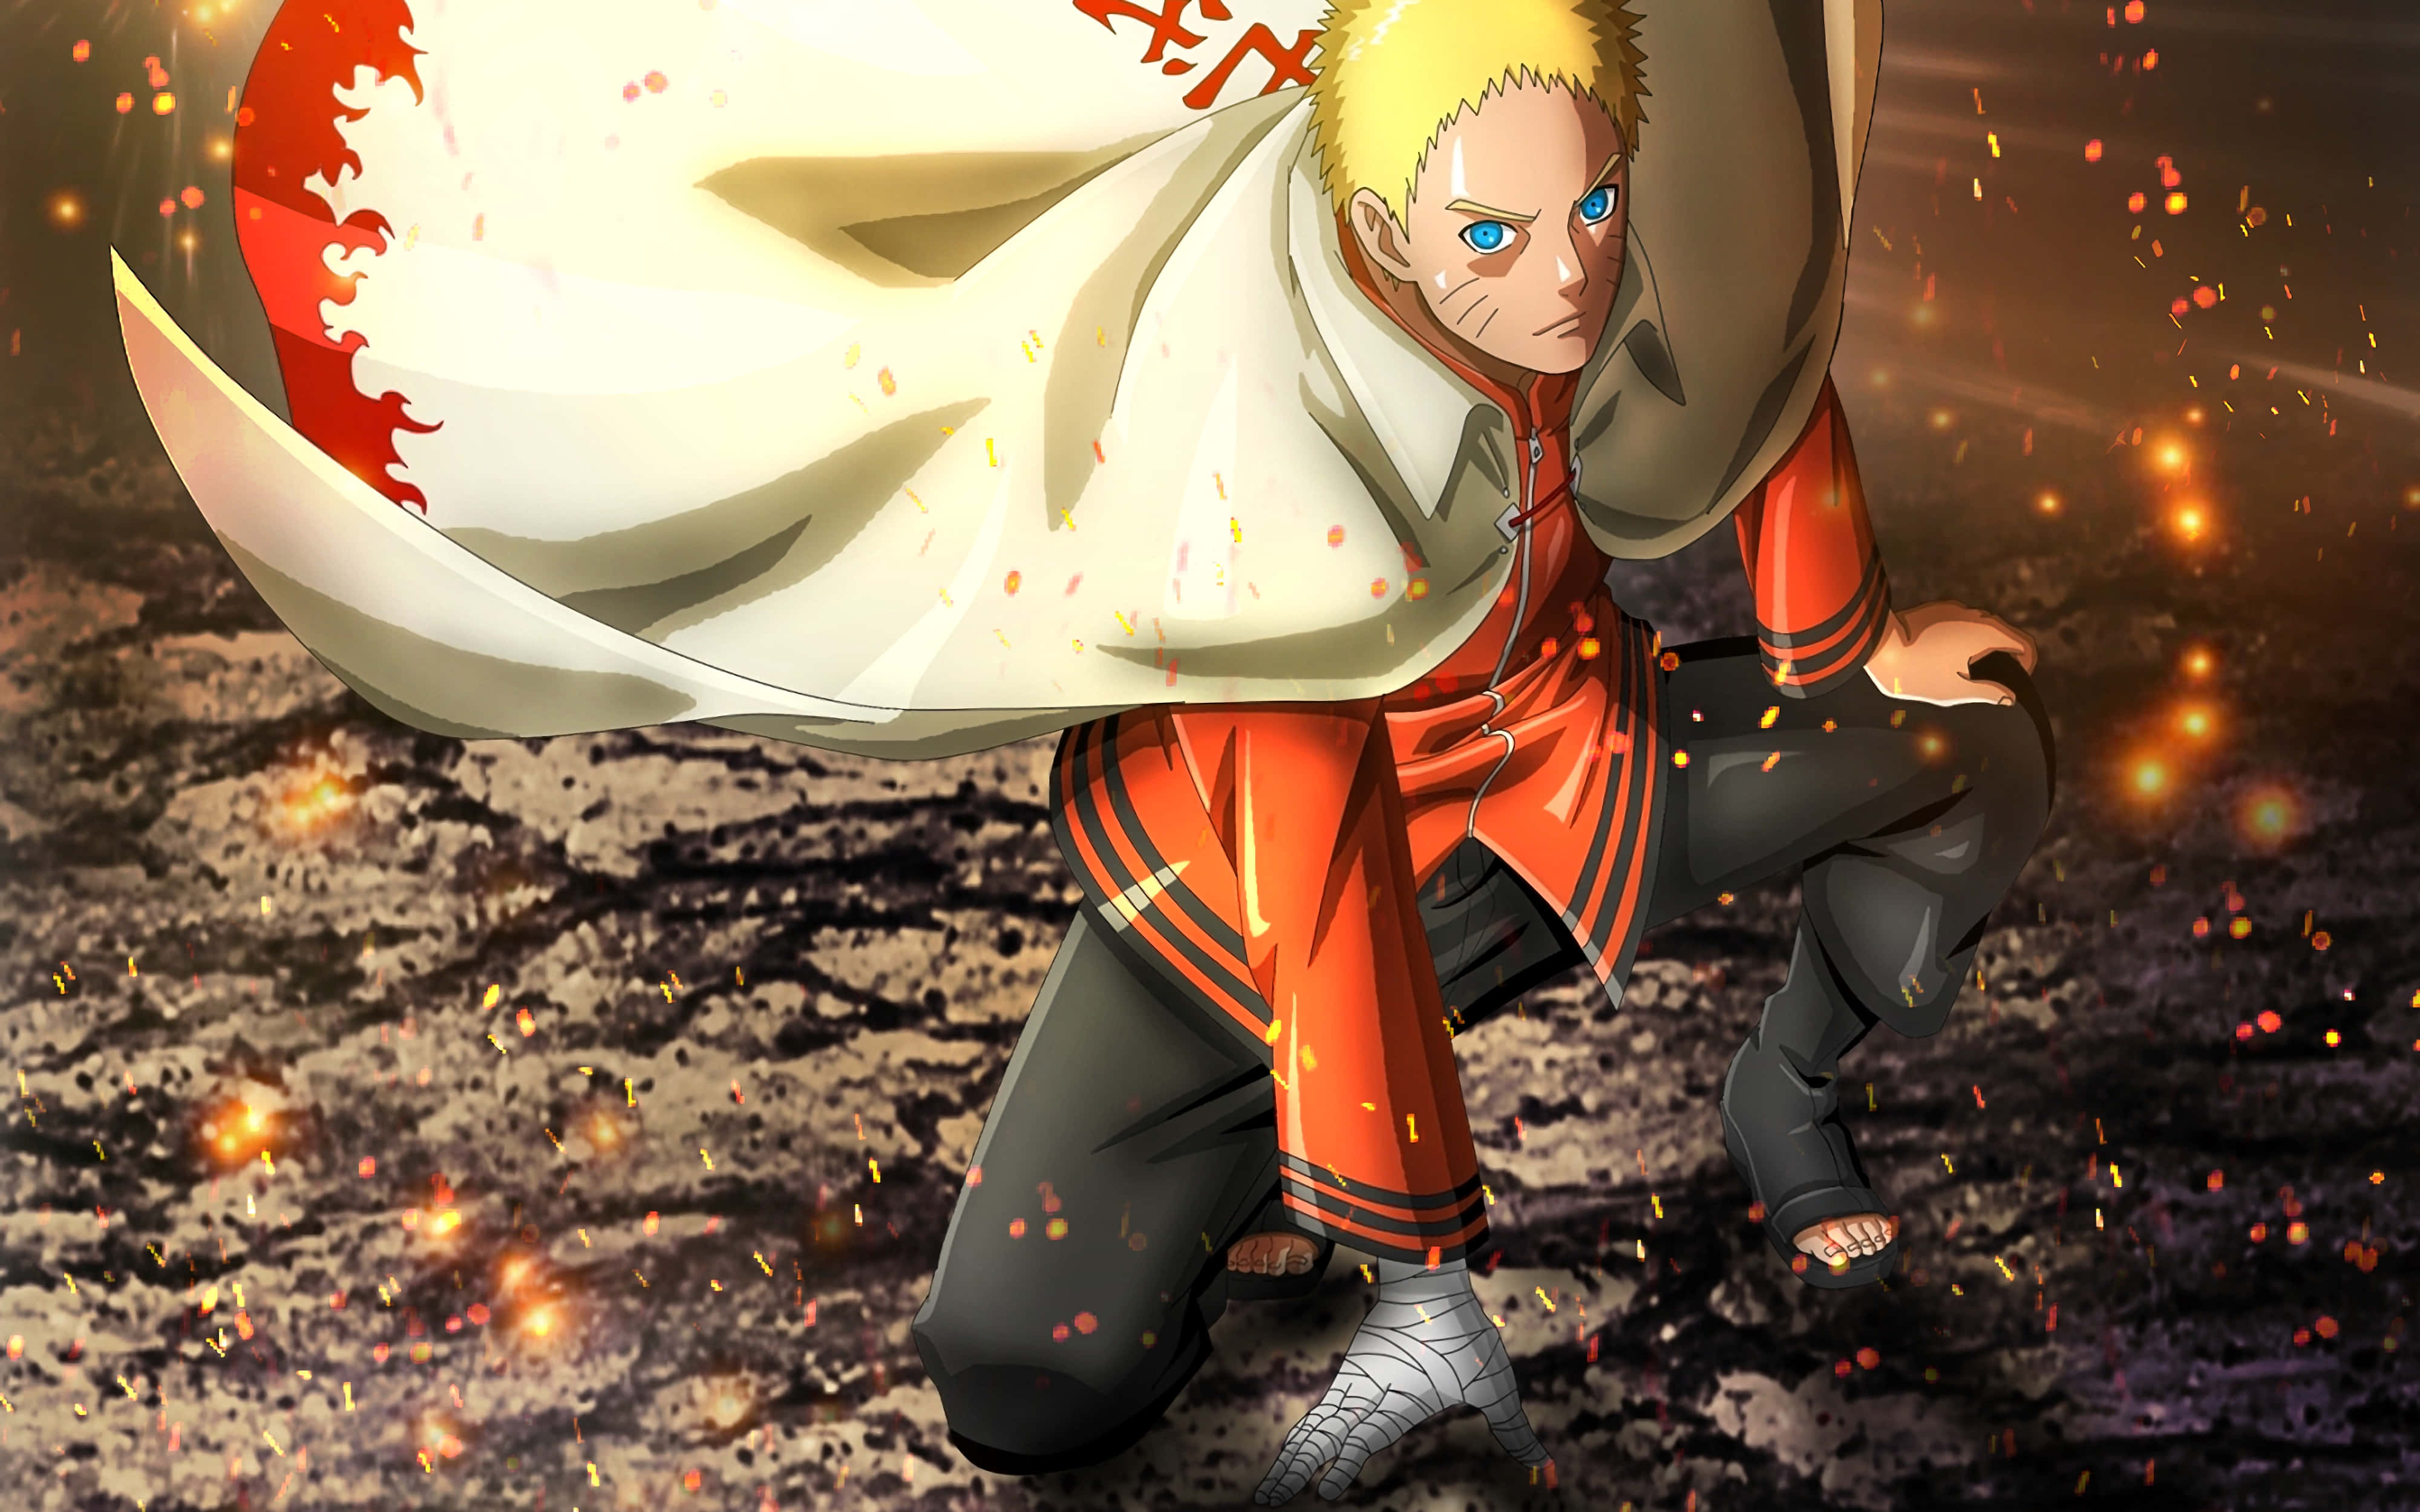 Narutouzumaki, Den Elskede Hovedperson I Den Populære Manga-serie Wallpaper